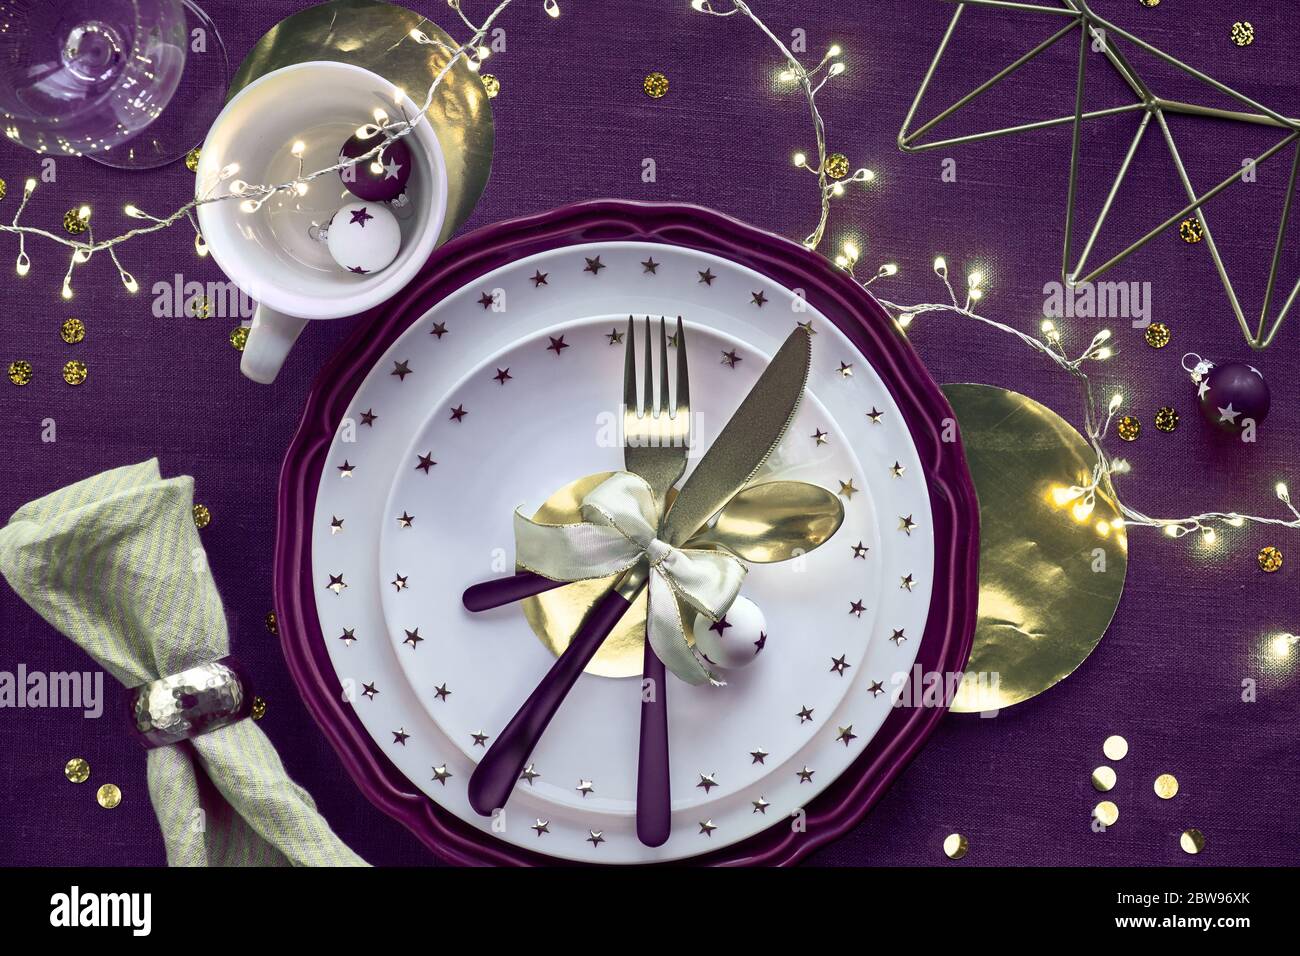 Tavolo natalizio con piatti viola e bianchi, utensili dorati e garland leggero. Disposizione piatta, vista dall'alto su fondo in tessuto di lino viola al neon scuro Foto Stock